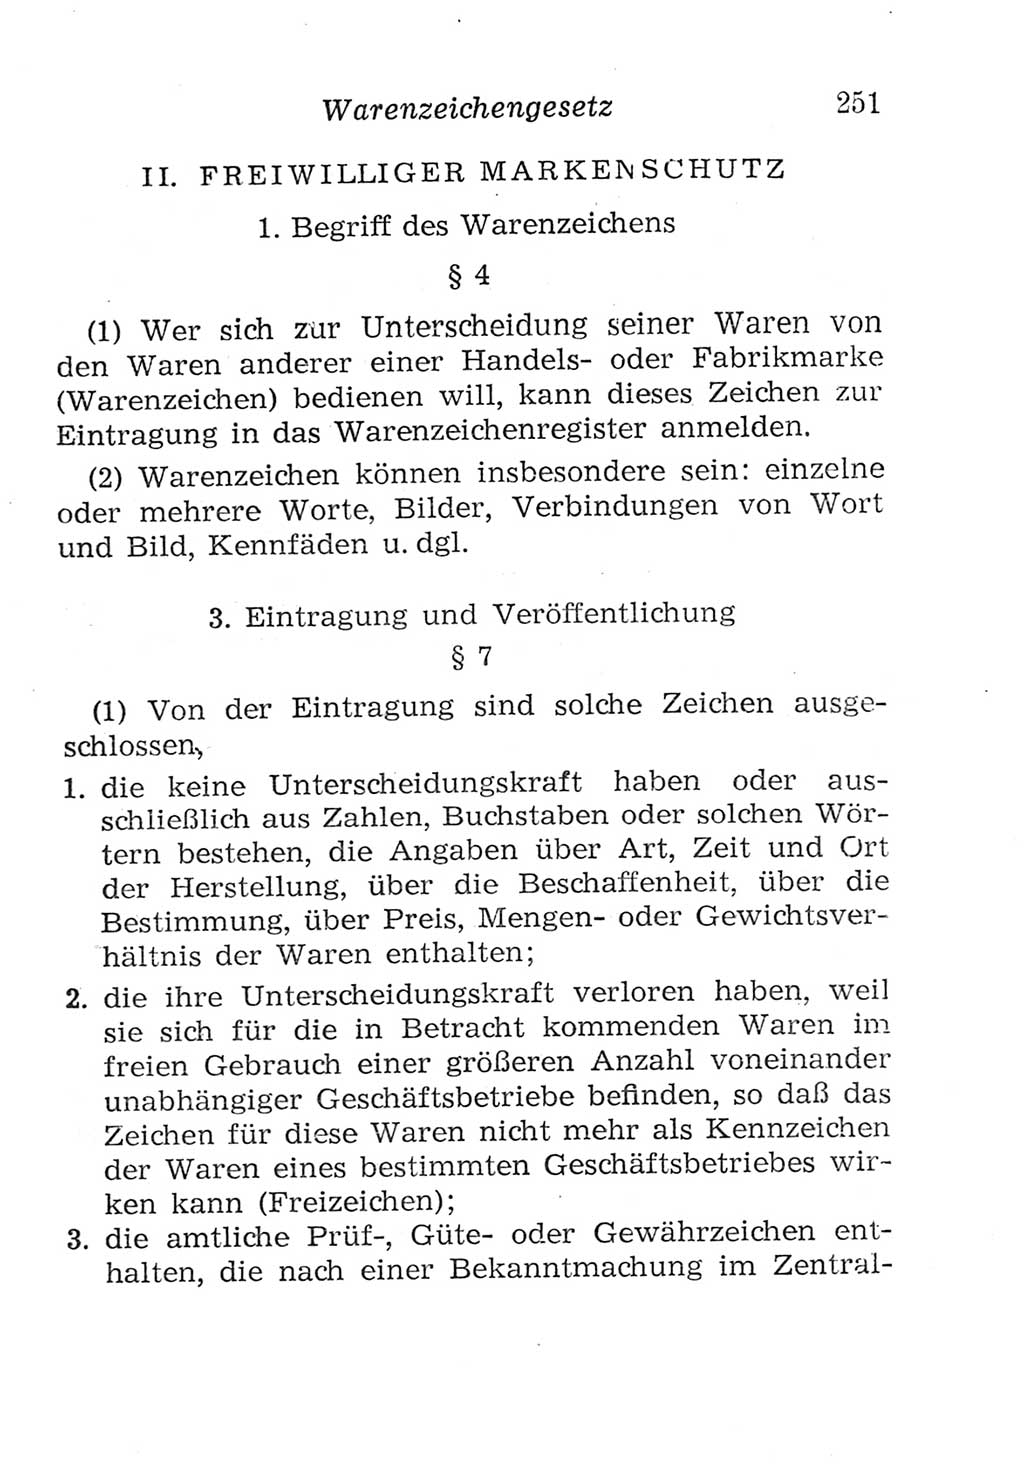 Strafgesetzbuch (StGB) und andere Strafgesetze [Deutsche Demokratische Republik (DDR)] 1957, Seite 251 (StGB Strafges. DDR 1957, S. 251)